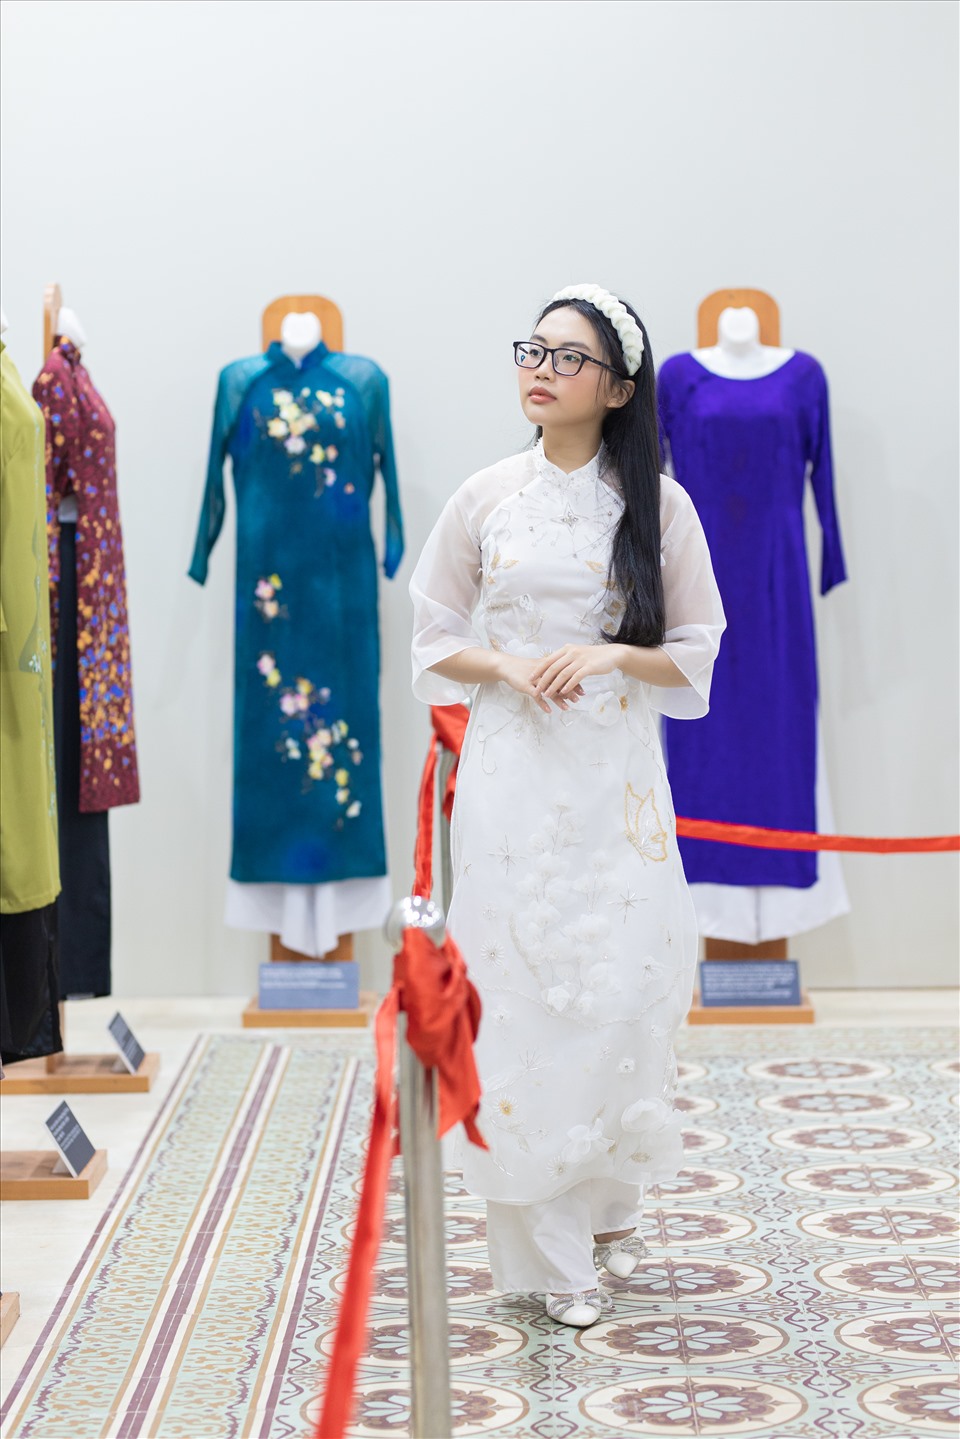 Với vai trò đại sứ hình ảnh, Phương Mỹ Chi được nhận xét ngày càng ra dáng thiếu nữ, thuần khiết, trưởng thành trong cách diện trang phục áo dài.